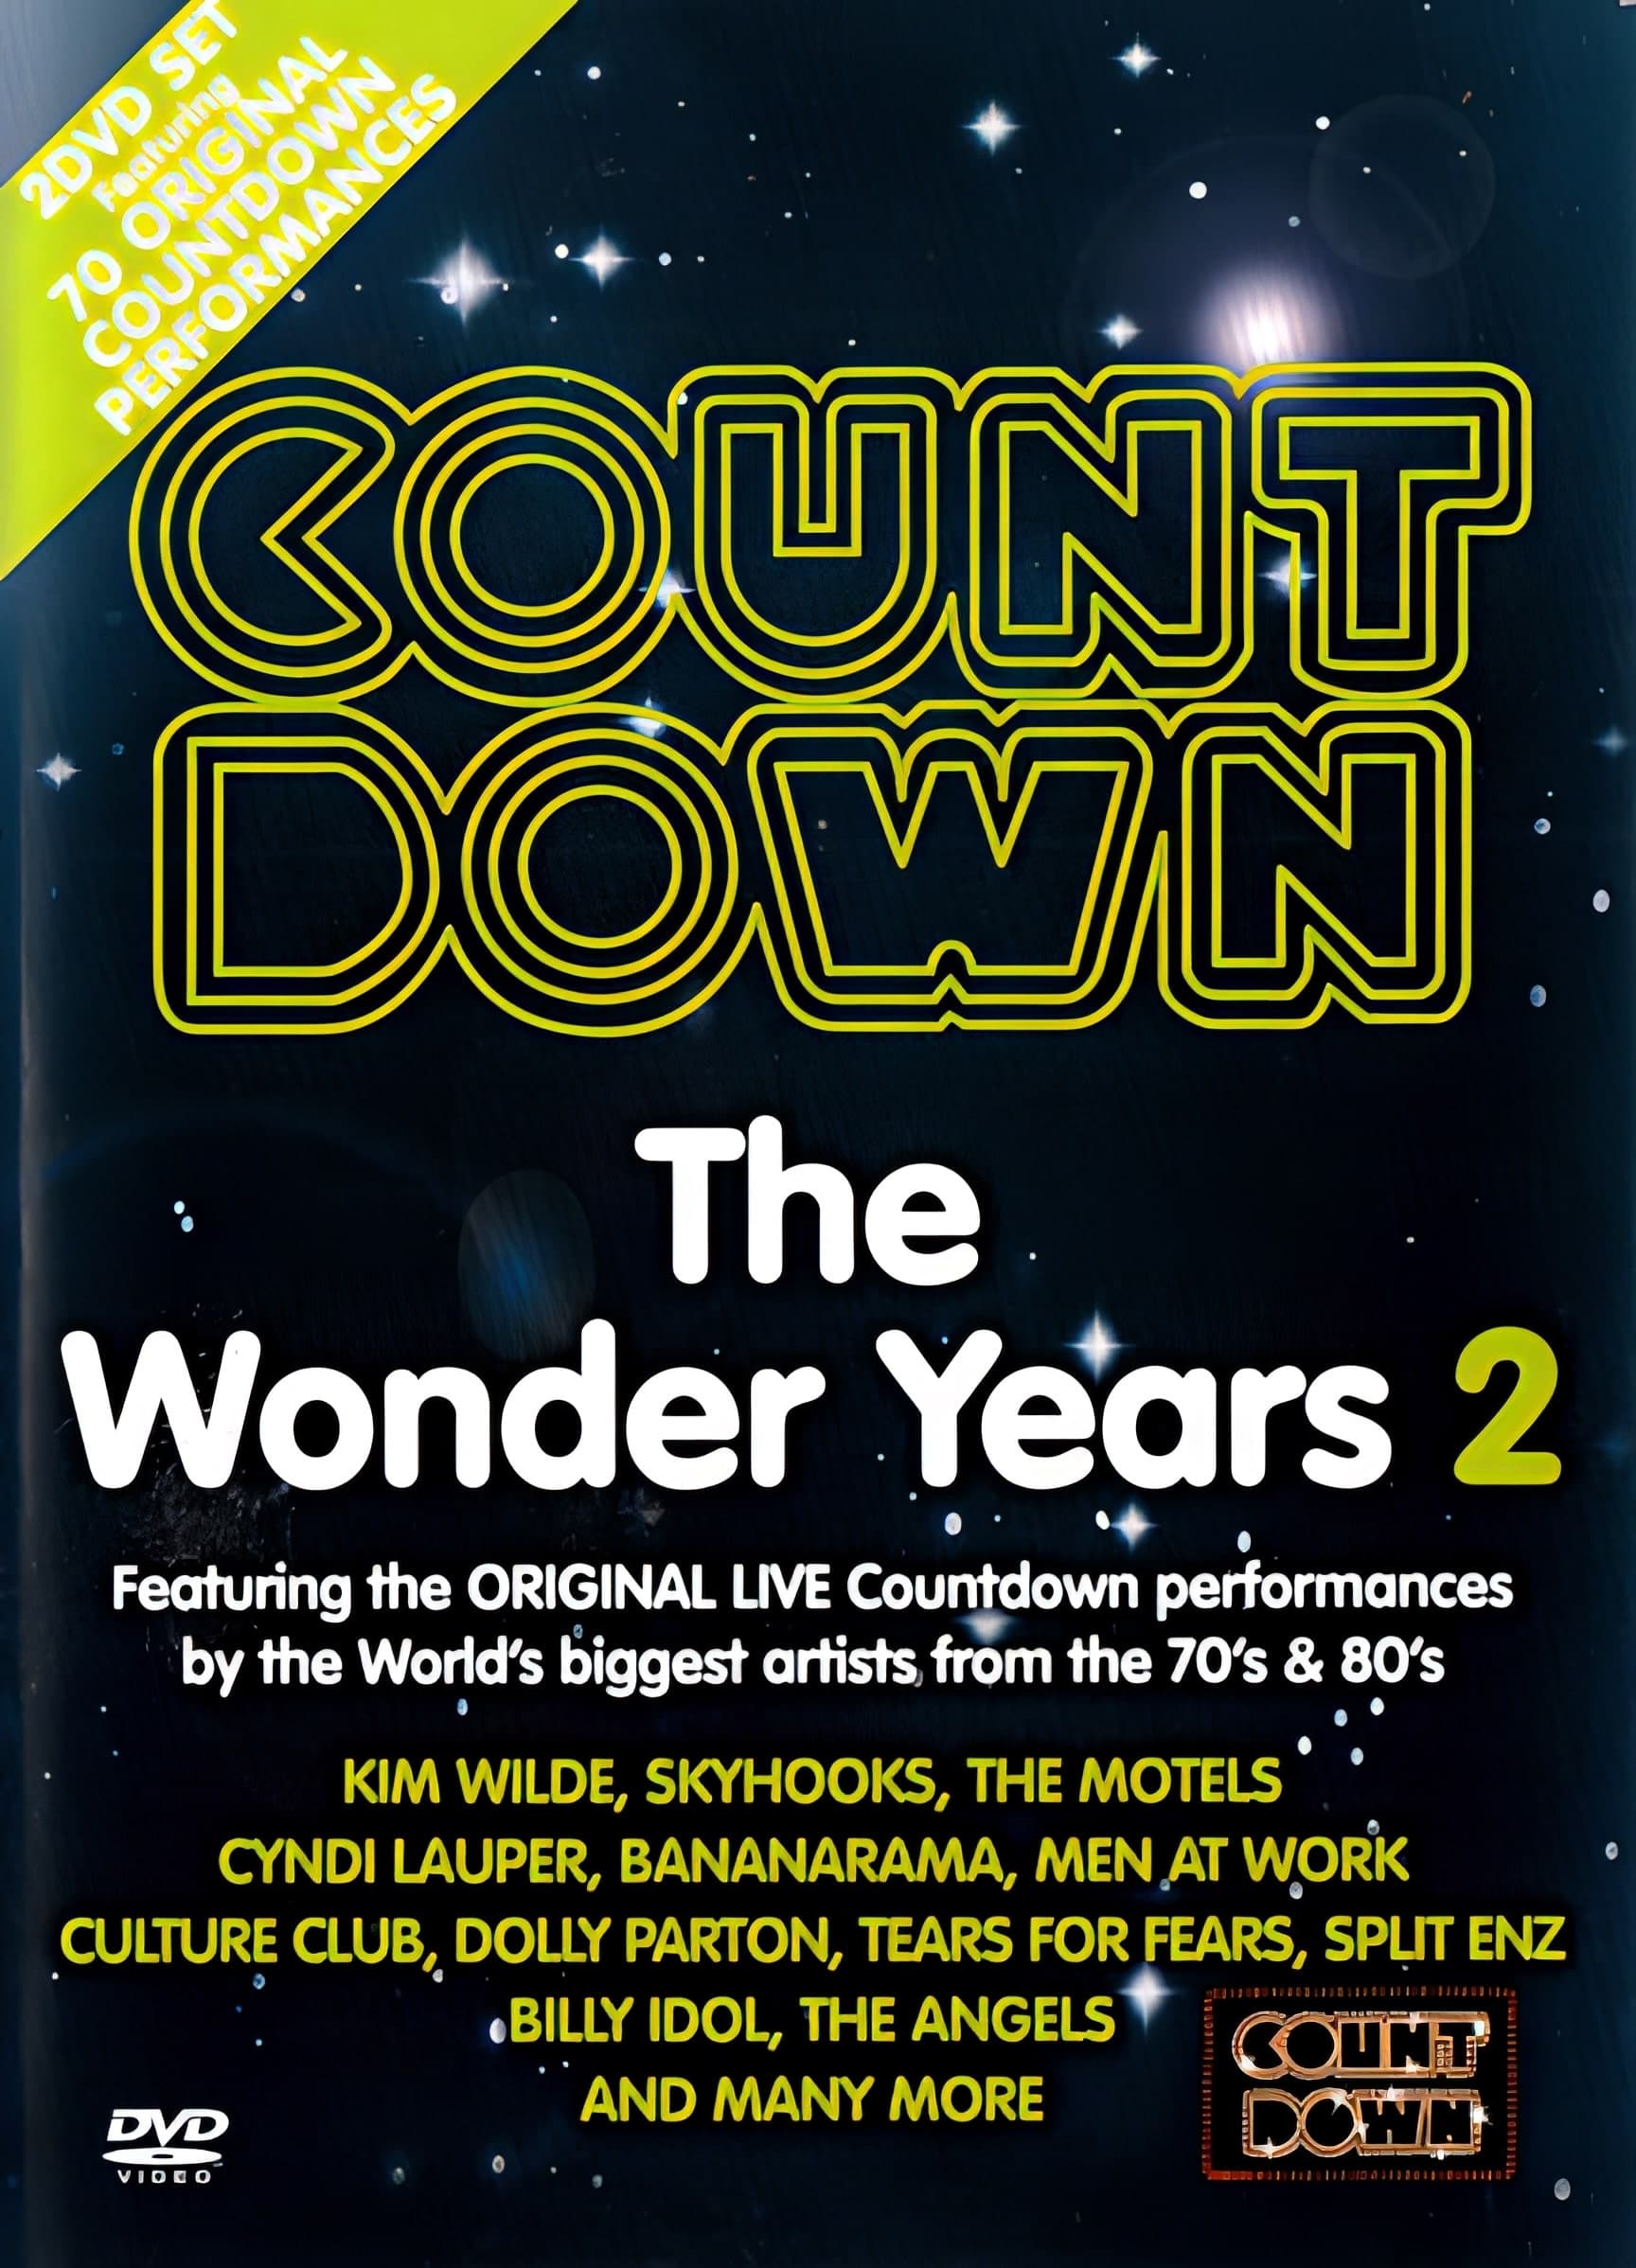 Countdown - The Wonder Years 2